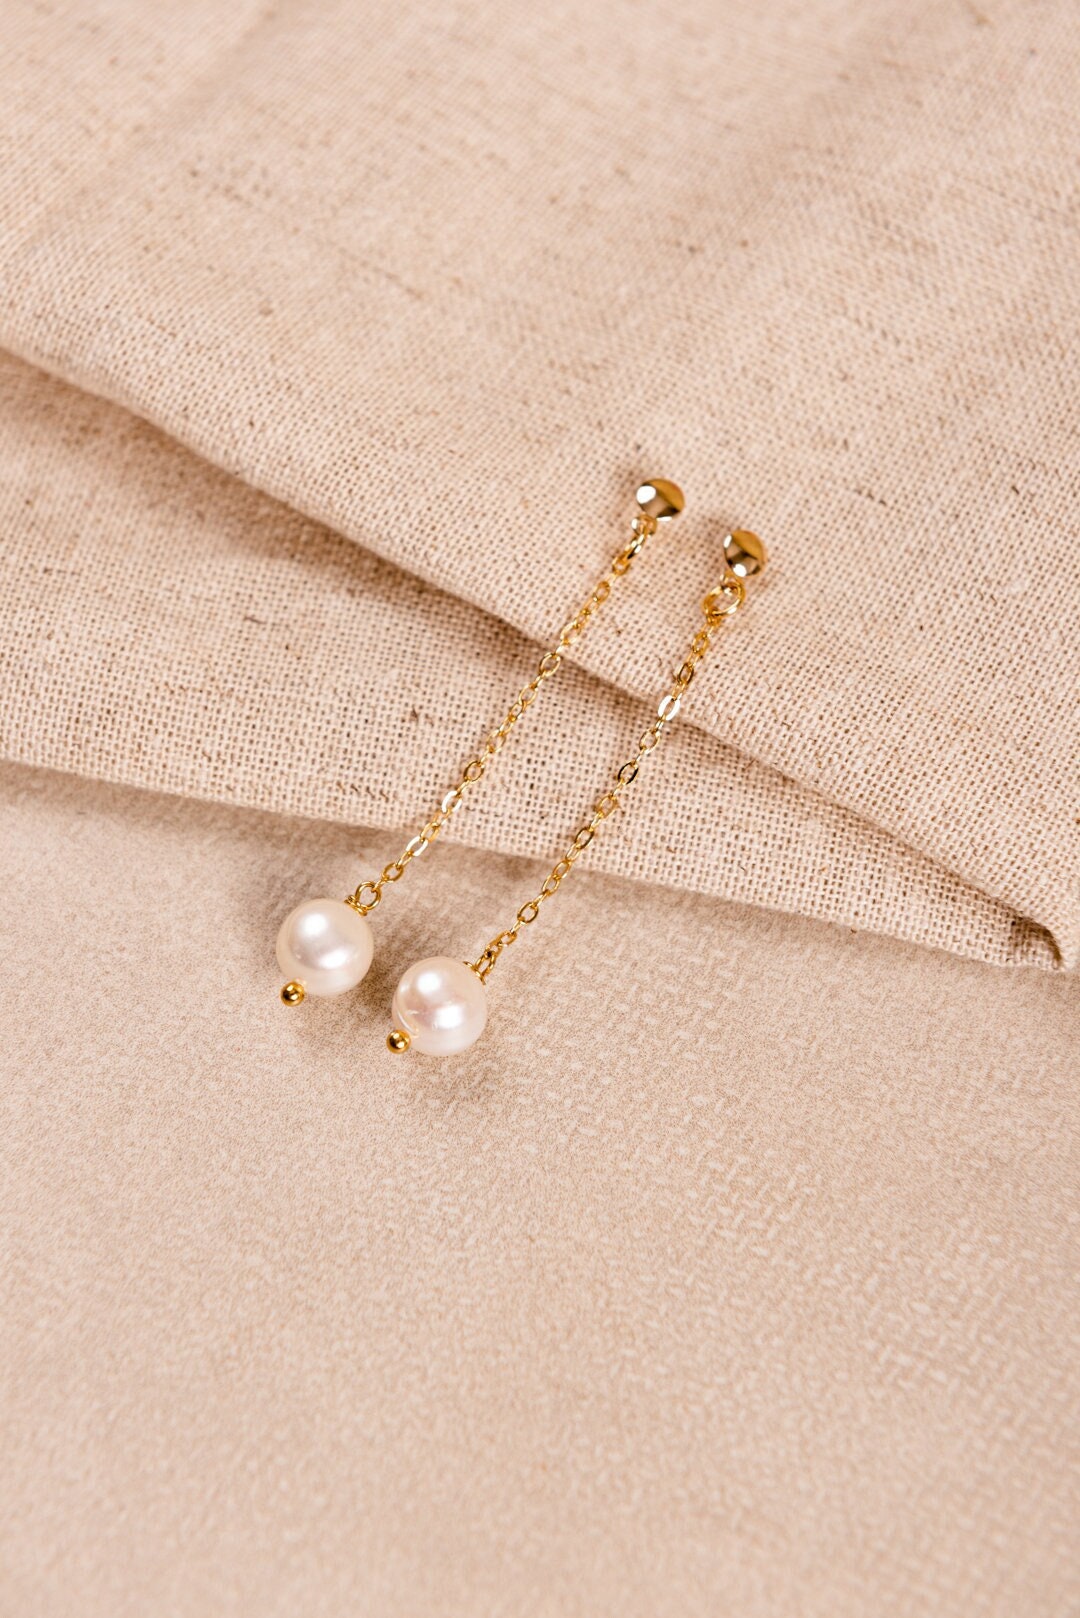 Dangle Pearl Earrings For Wedding, Freshwater Long Chain Earrings, Gold Drop Clip On Earrings